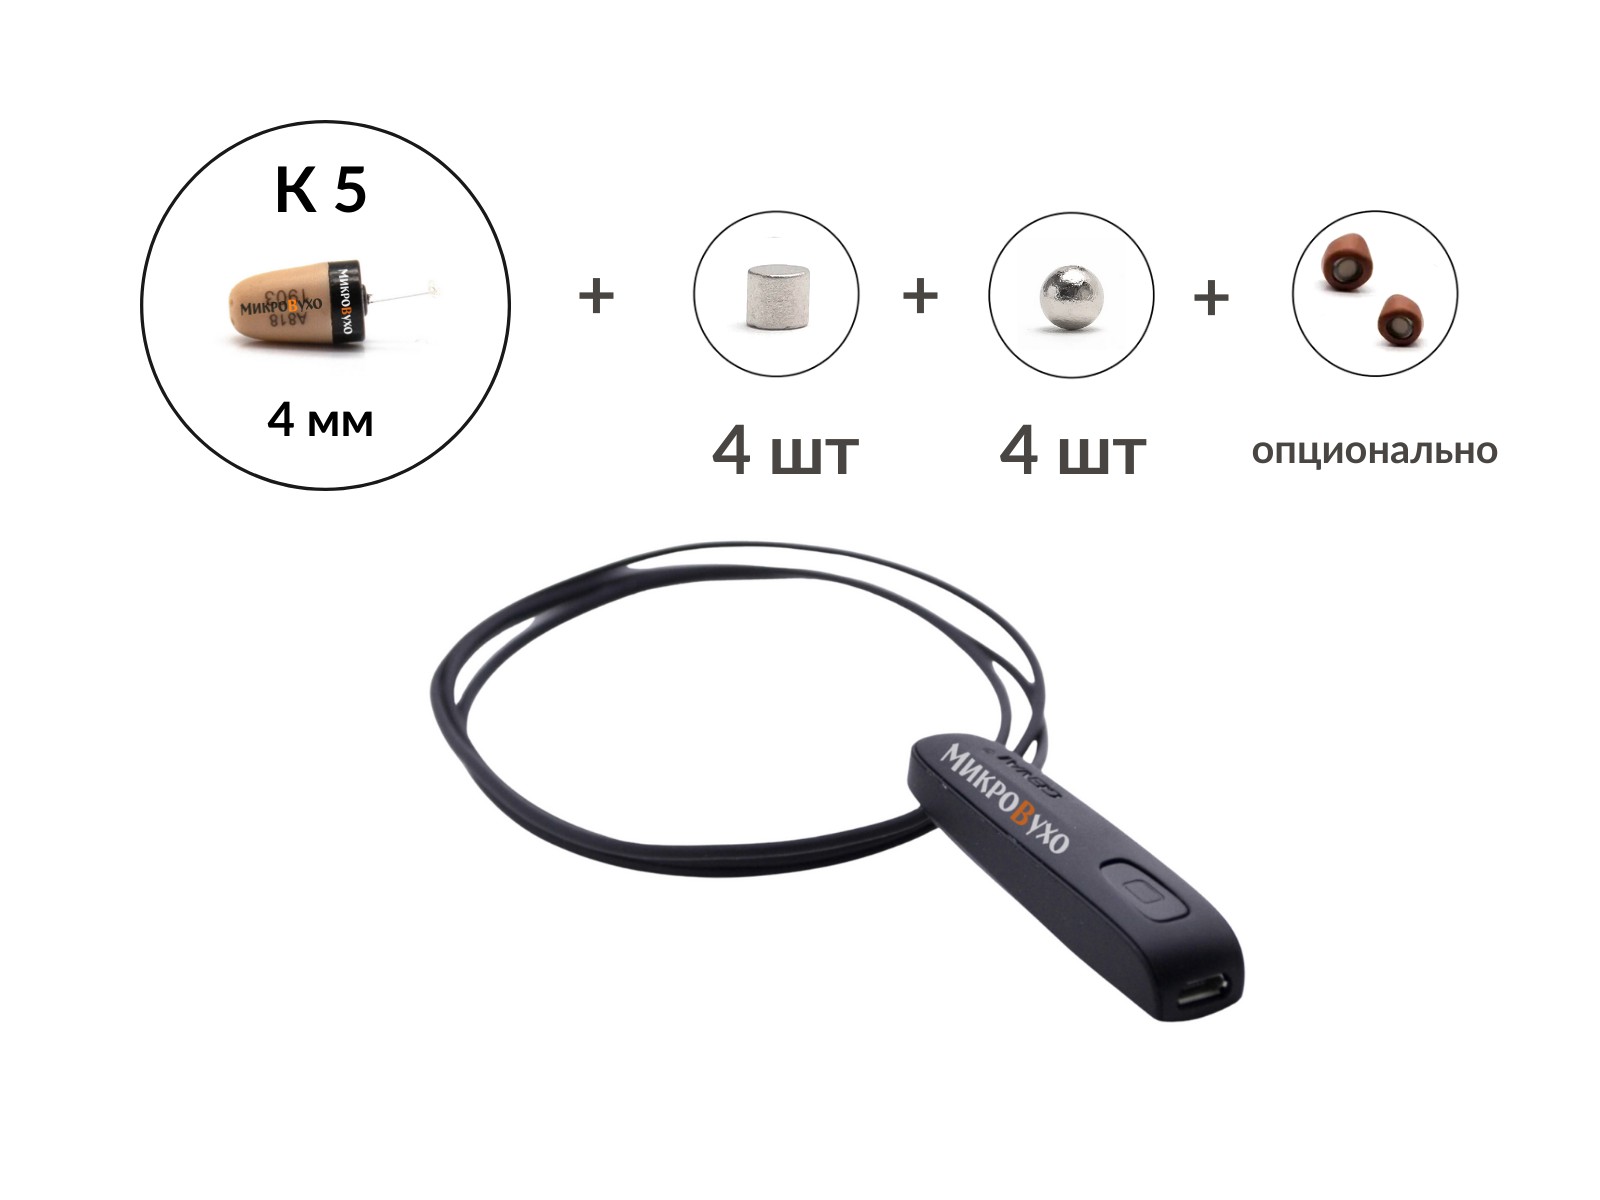 Универсальная гарнитура Bluetooth Basic с капсулой K5 4 мм и магнитами 2 мм - изображение